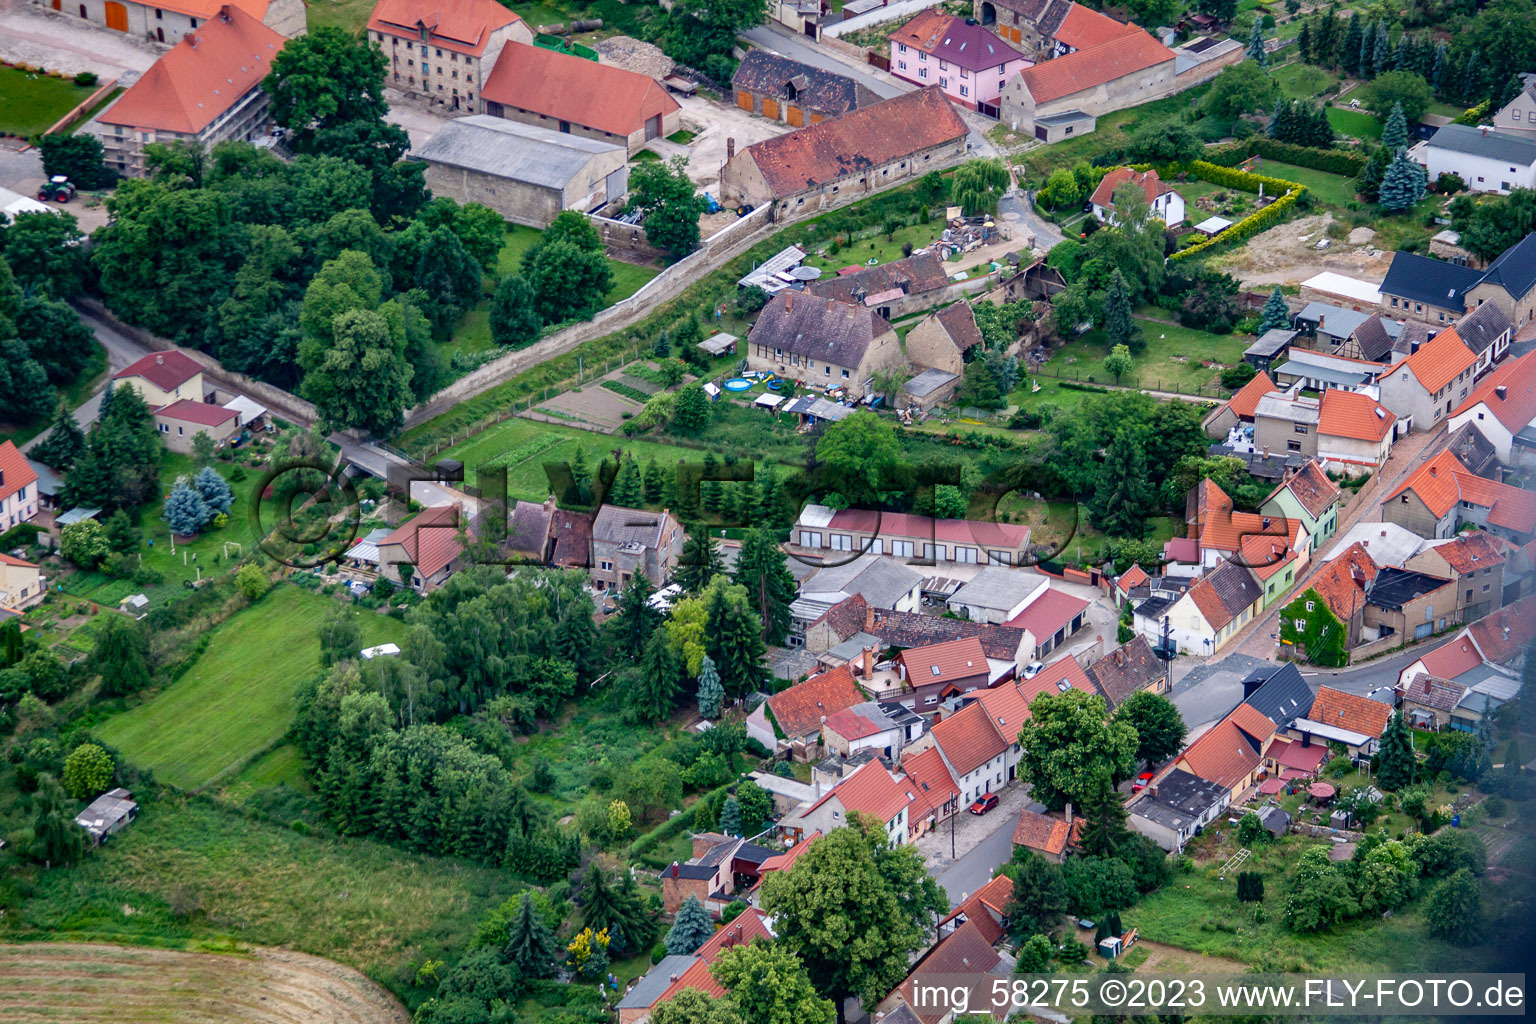 Vue aérienne de Quartier Cochstedt in Hecklingen dans le département Saxe-Anhalt, Allemagne